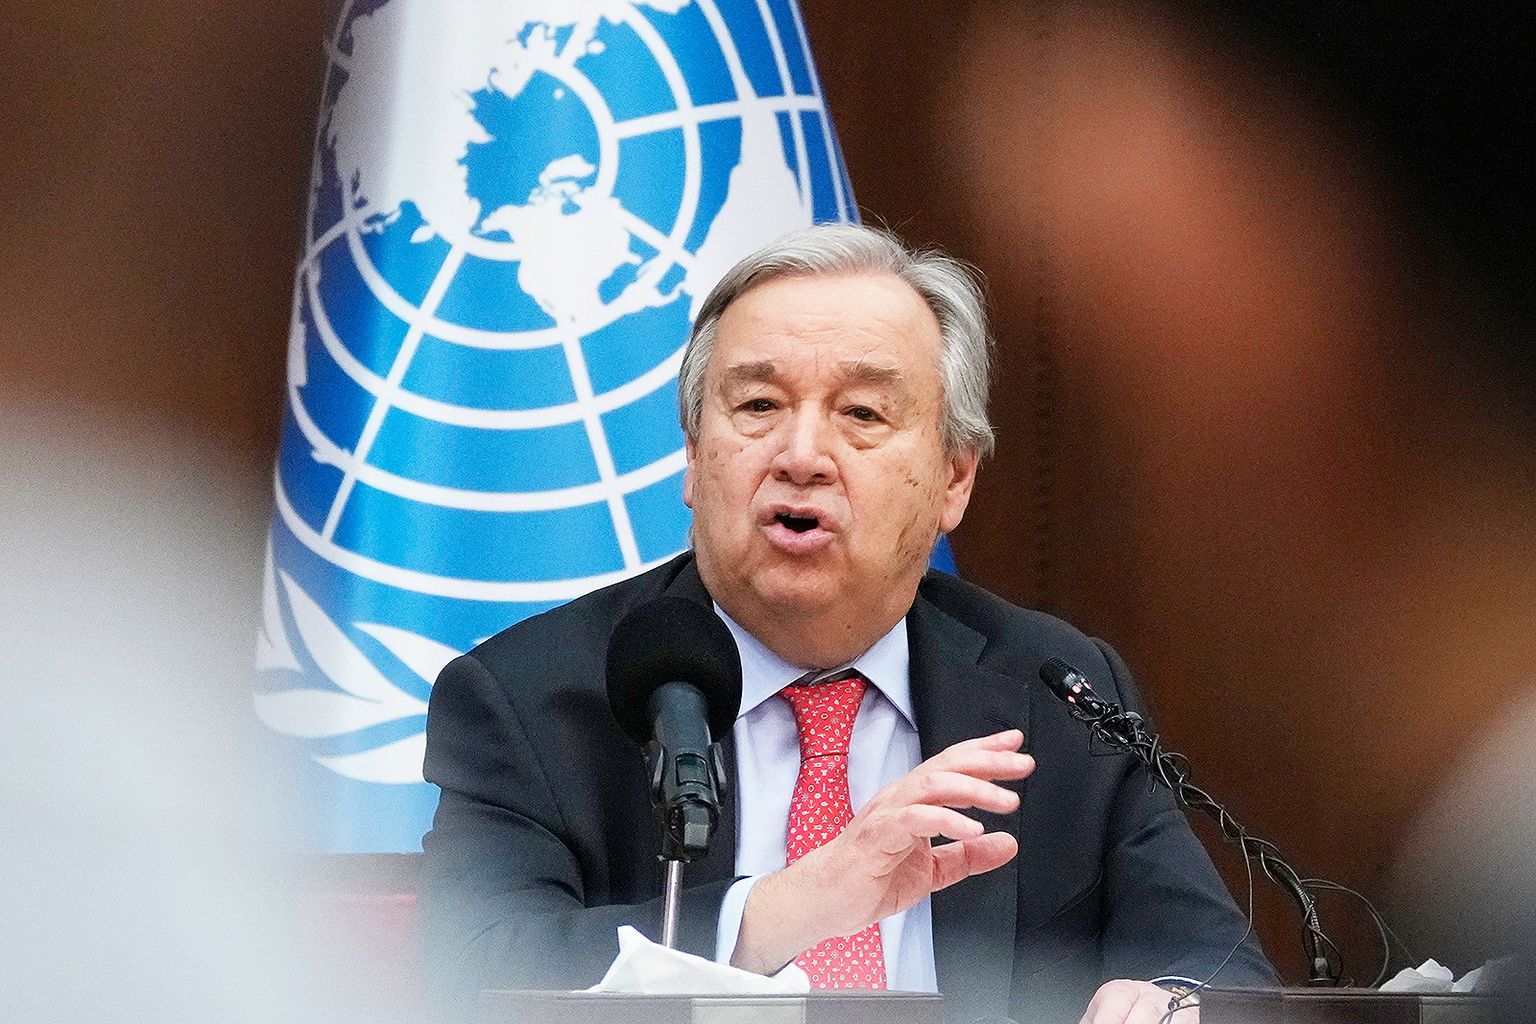 UN Secretary General António Guterres